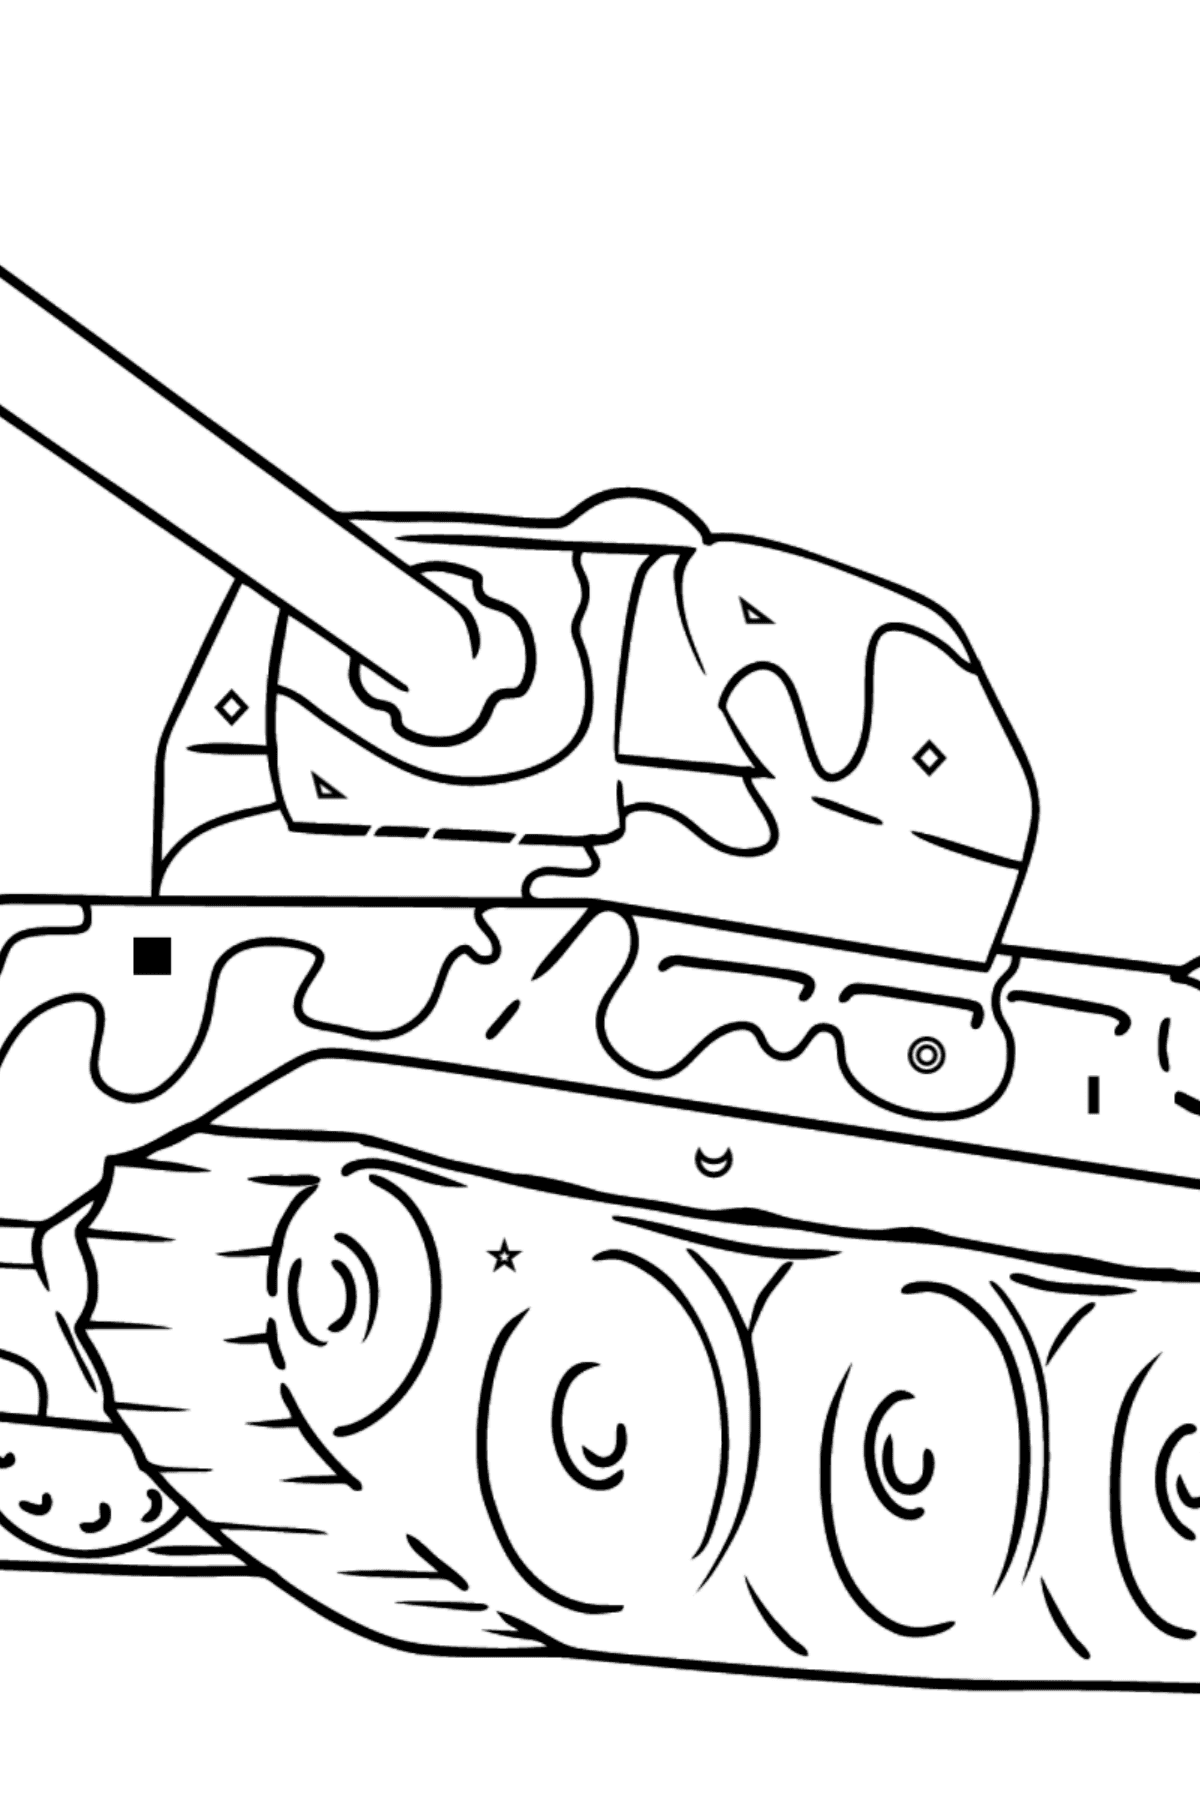 Desenho para colorir - tanque com arma antiaérea - Colorir por Símbolos para Crianças